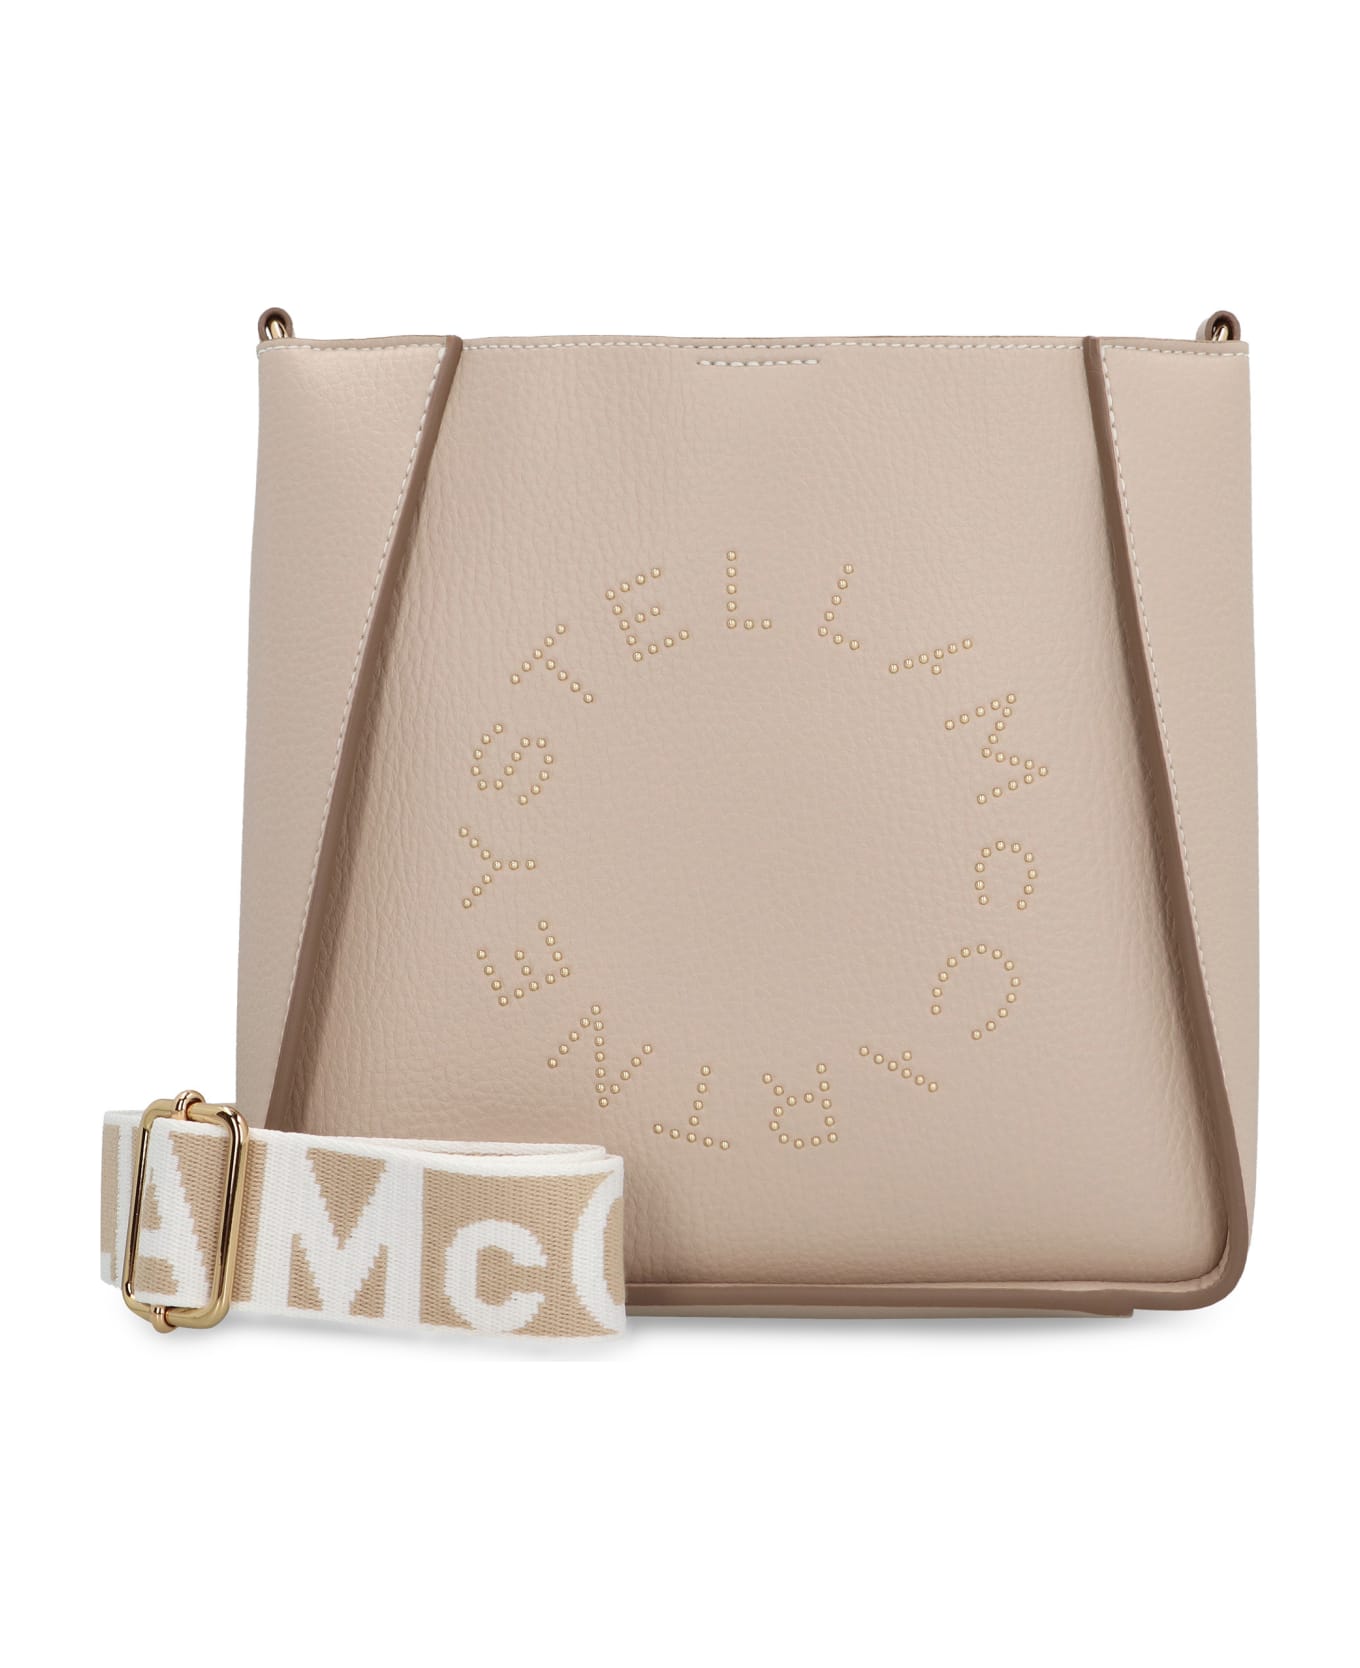 Stella McCartney Logo Shoulder Bag - Beige